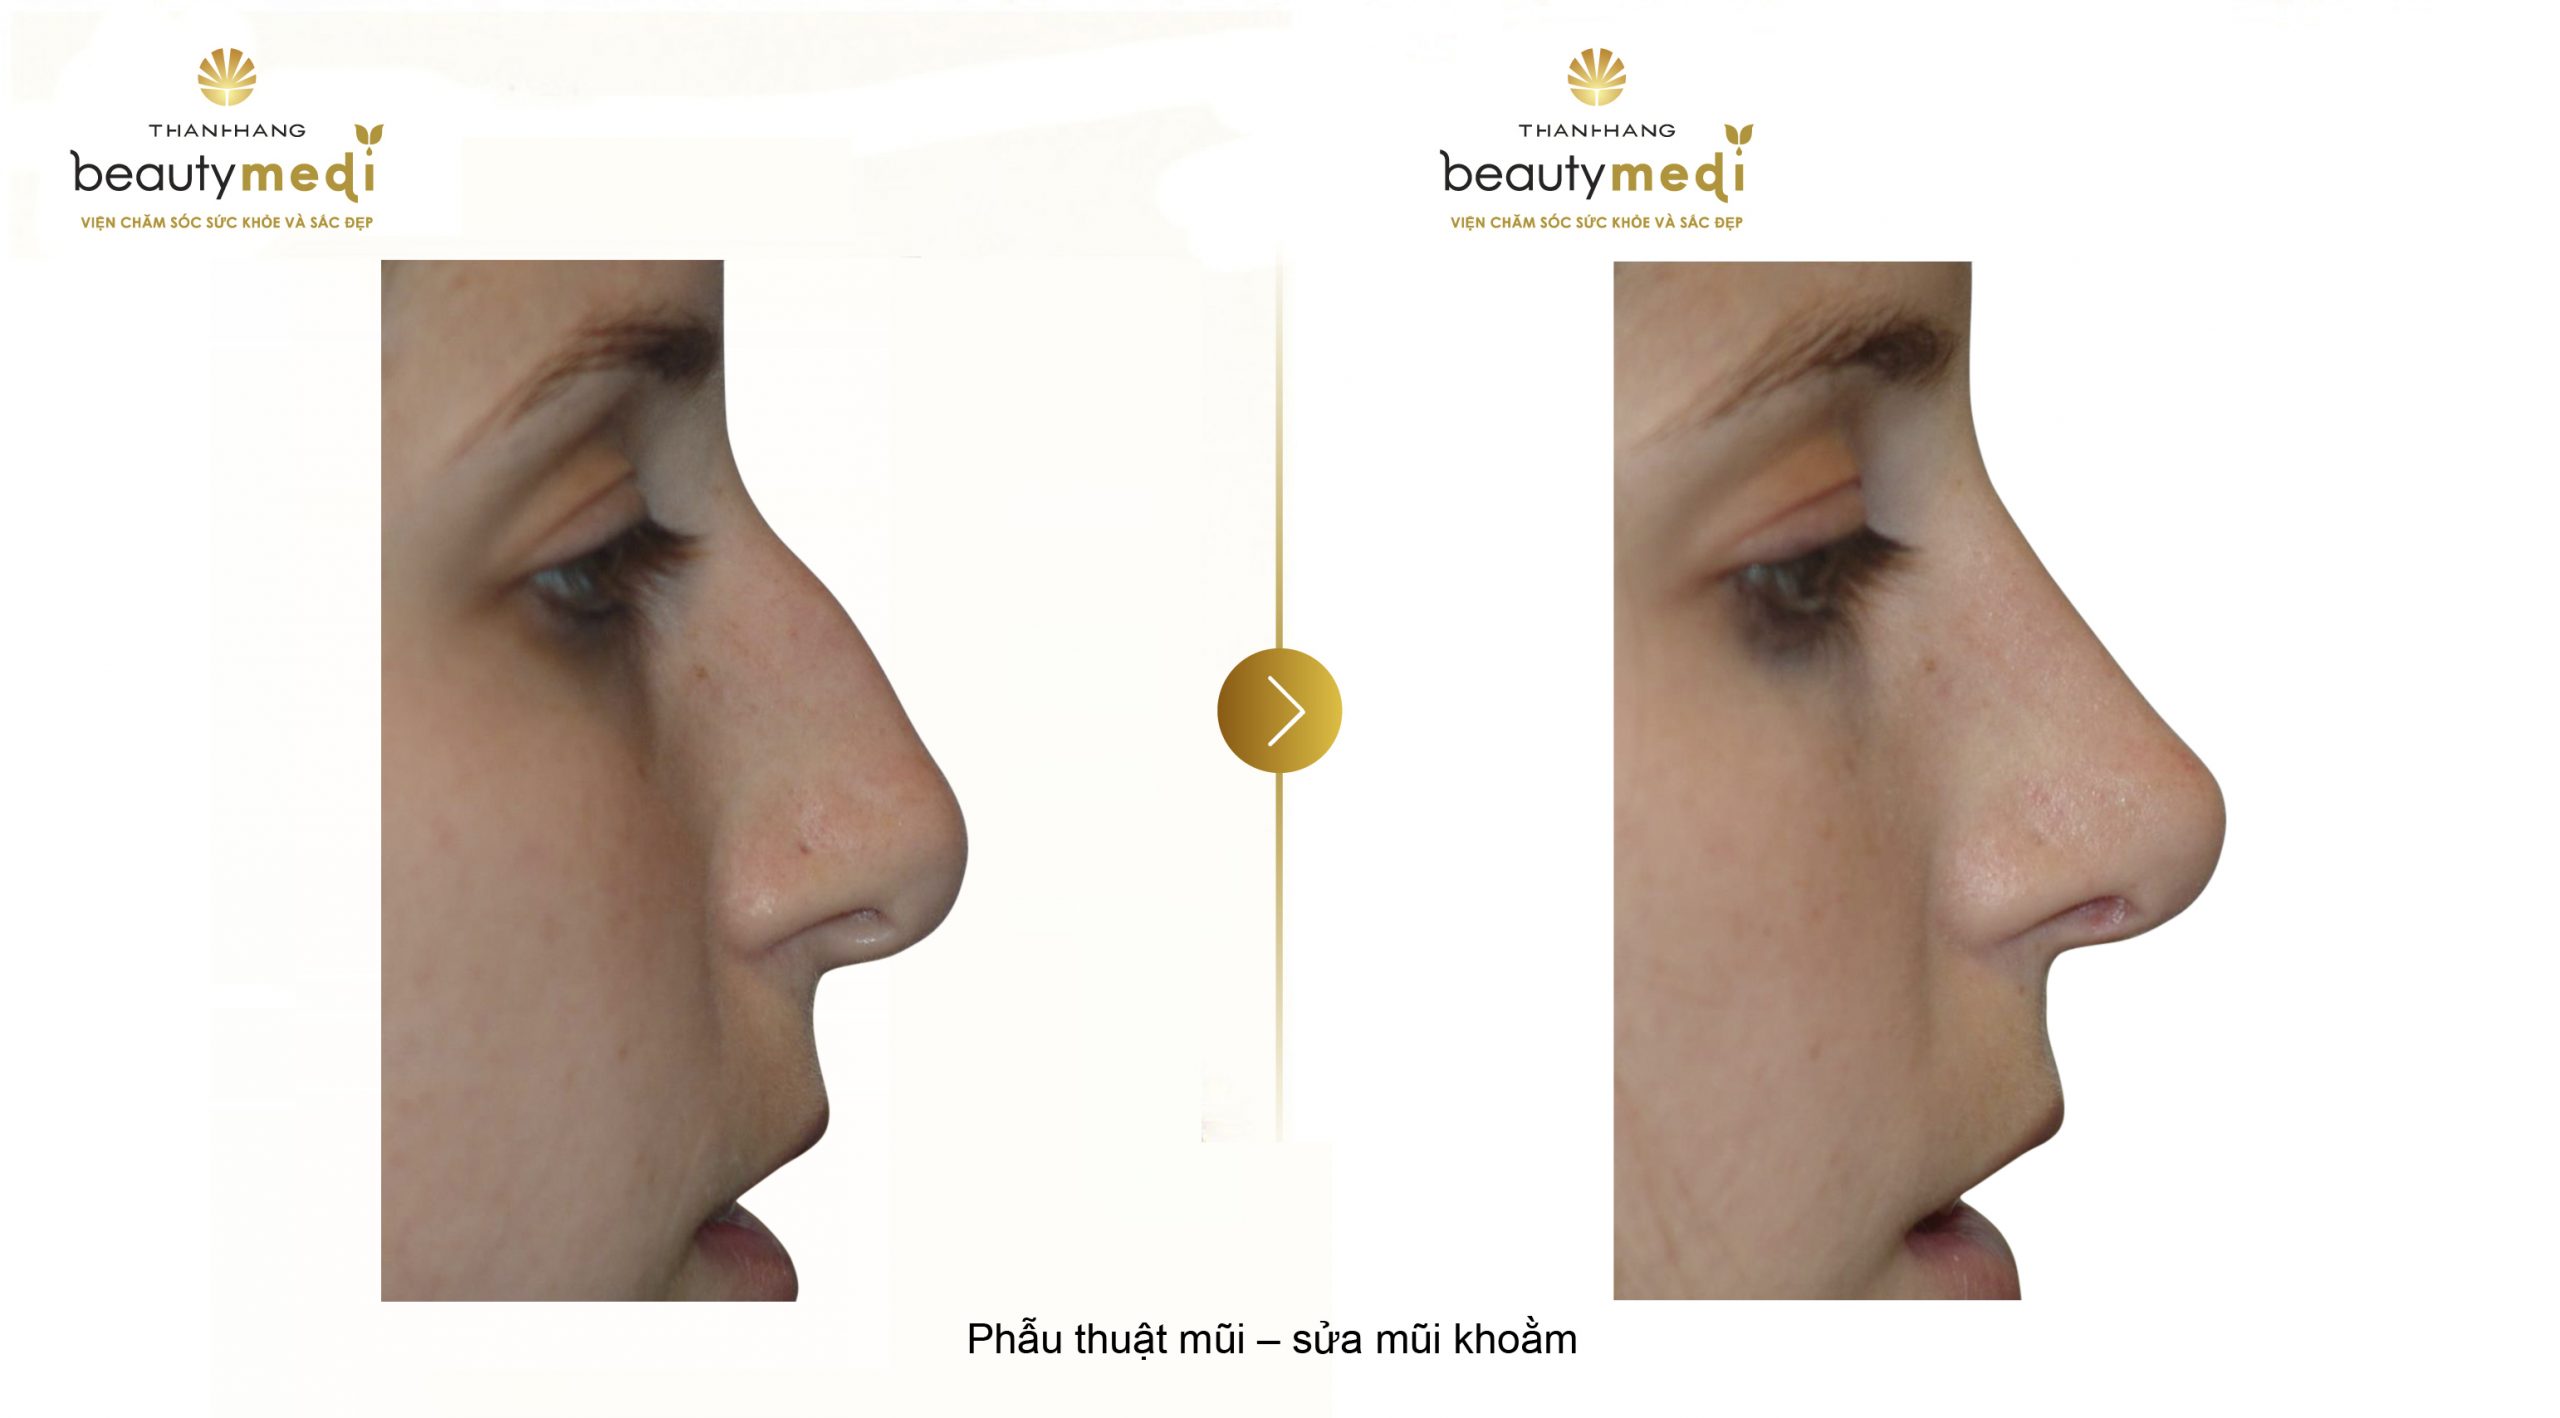 Hình ảnh trước và sau khi phẫu thuật mũi gồ ghề, mũi khoằm